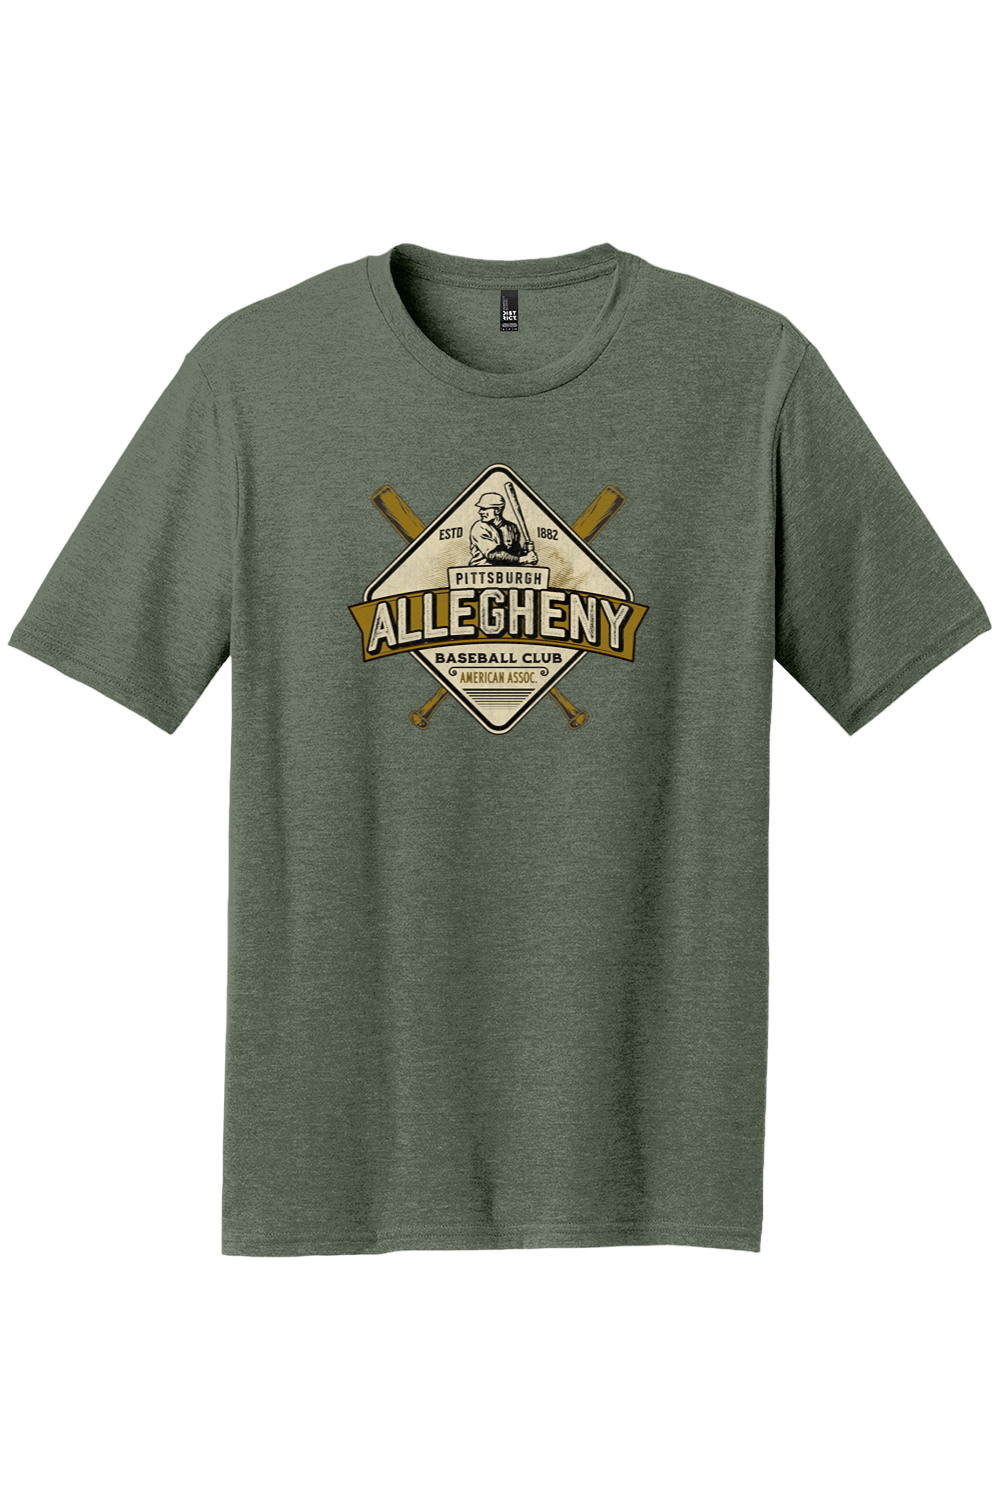 Pittsburgh Allegheny Baseball Club - 1882 - Yinzylvania